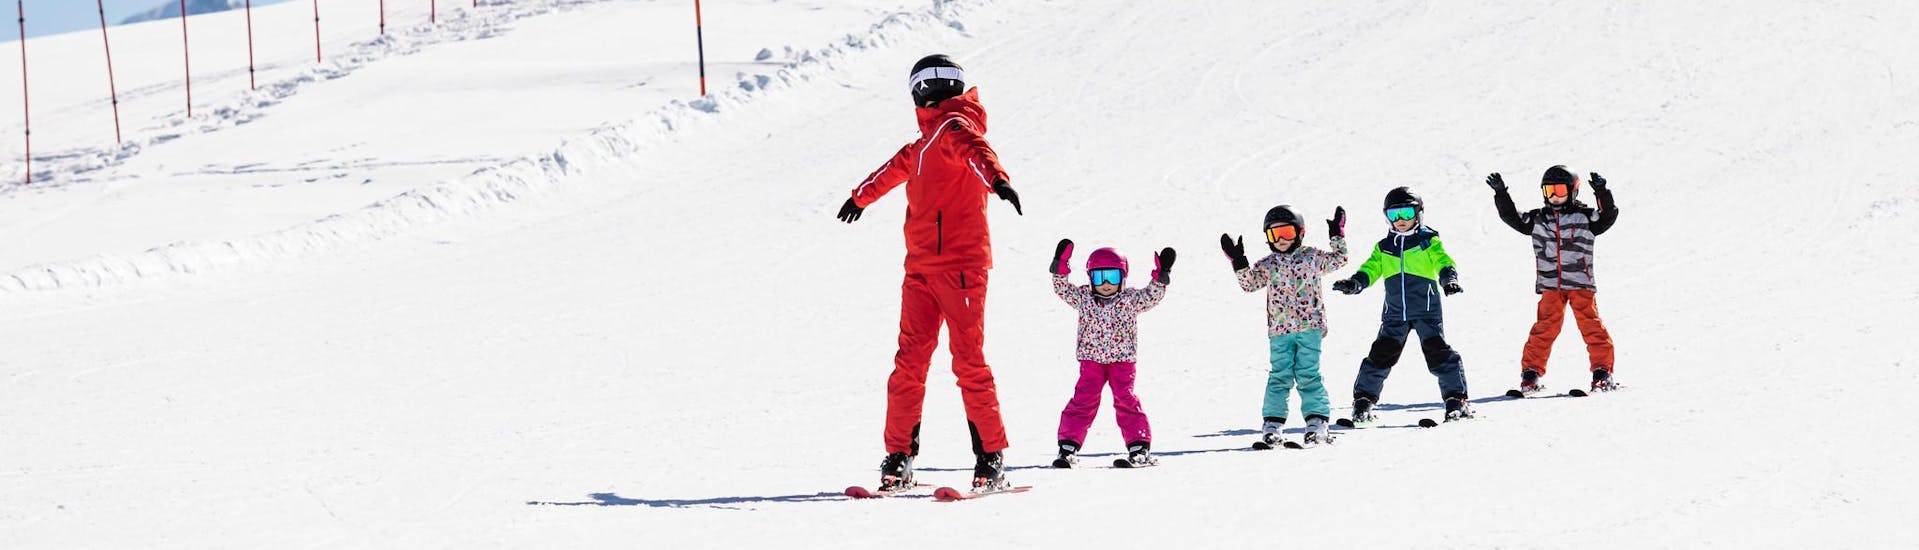 Instructor de esquí y niños disfrutan de una clase de esquí en una escuela cerca de Kempten.